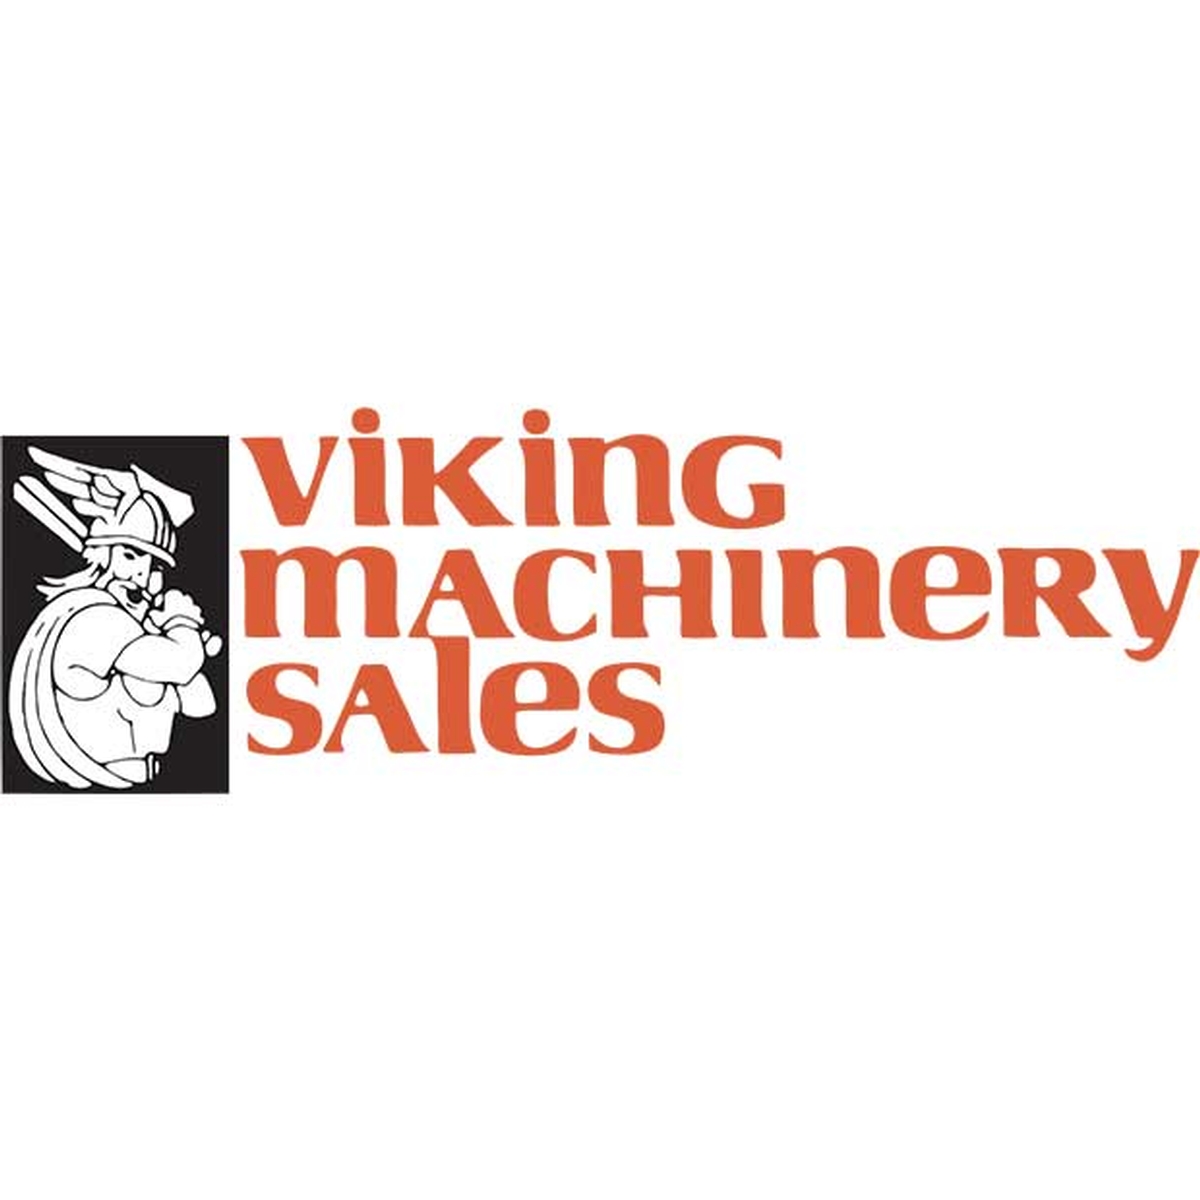 About Viking Machinery